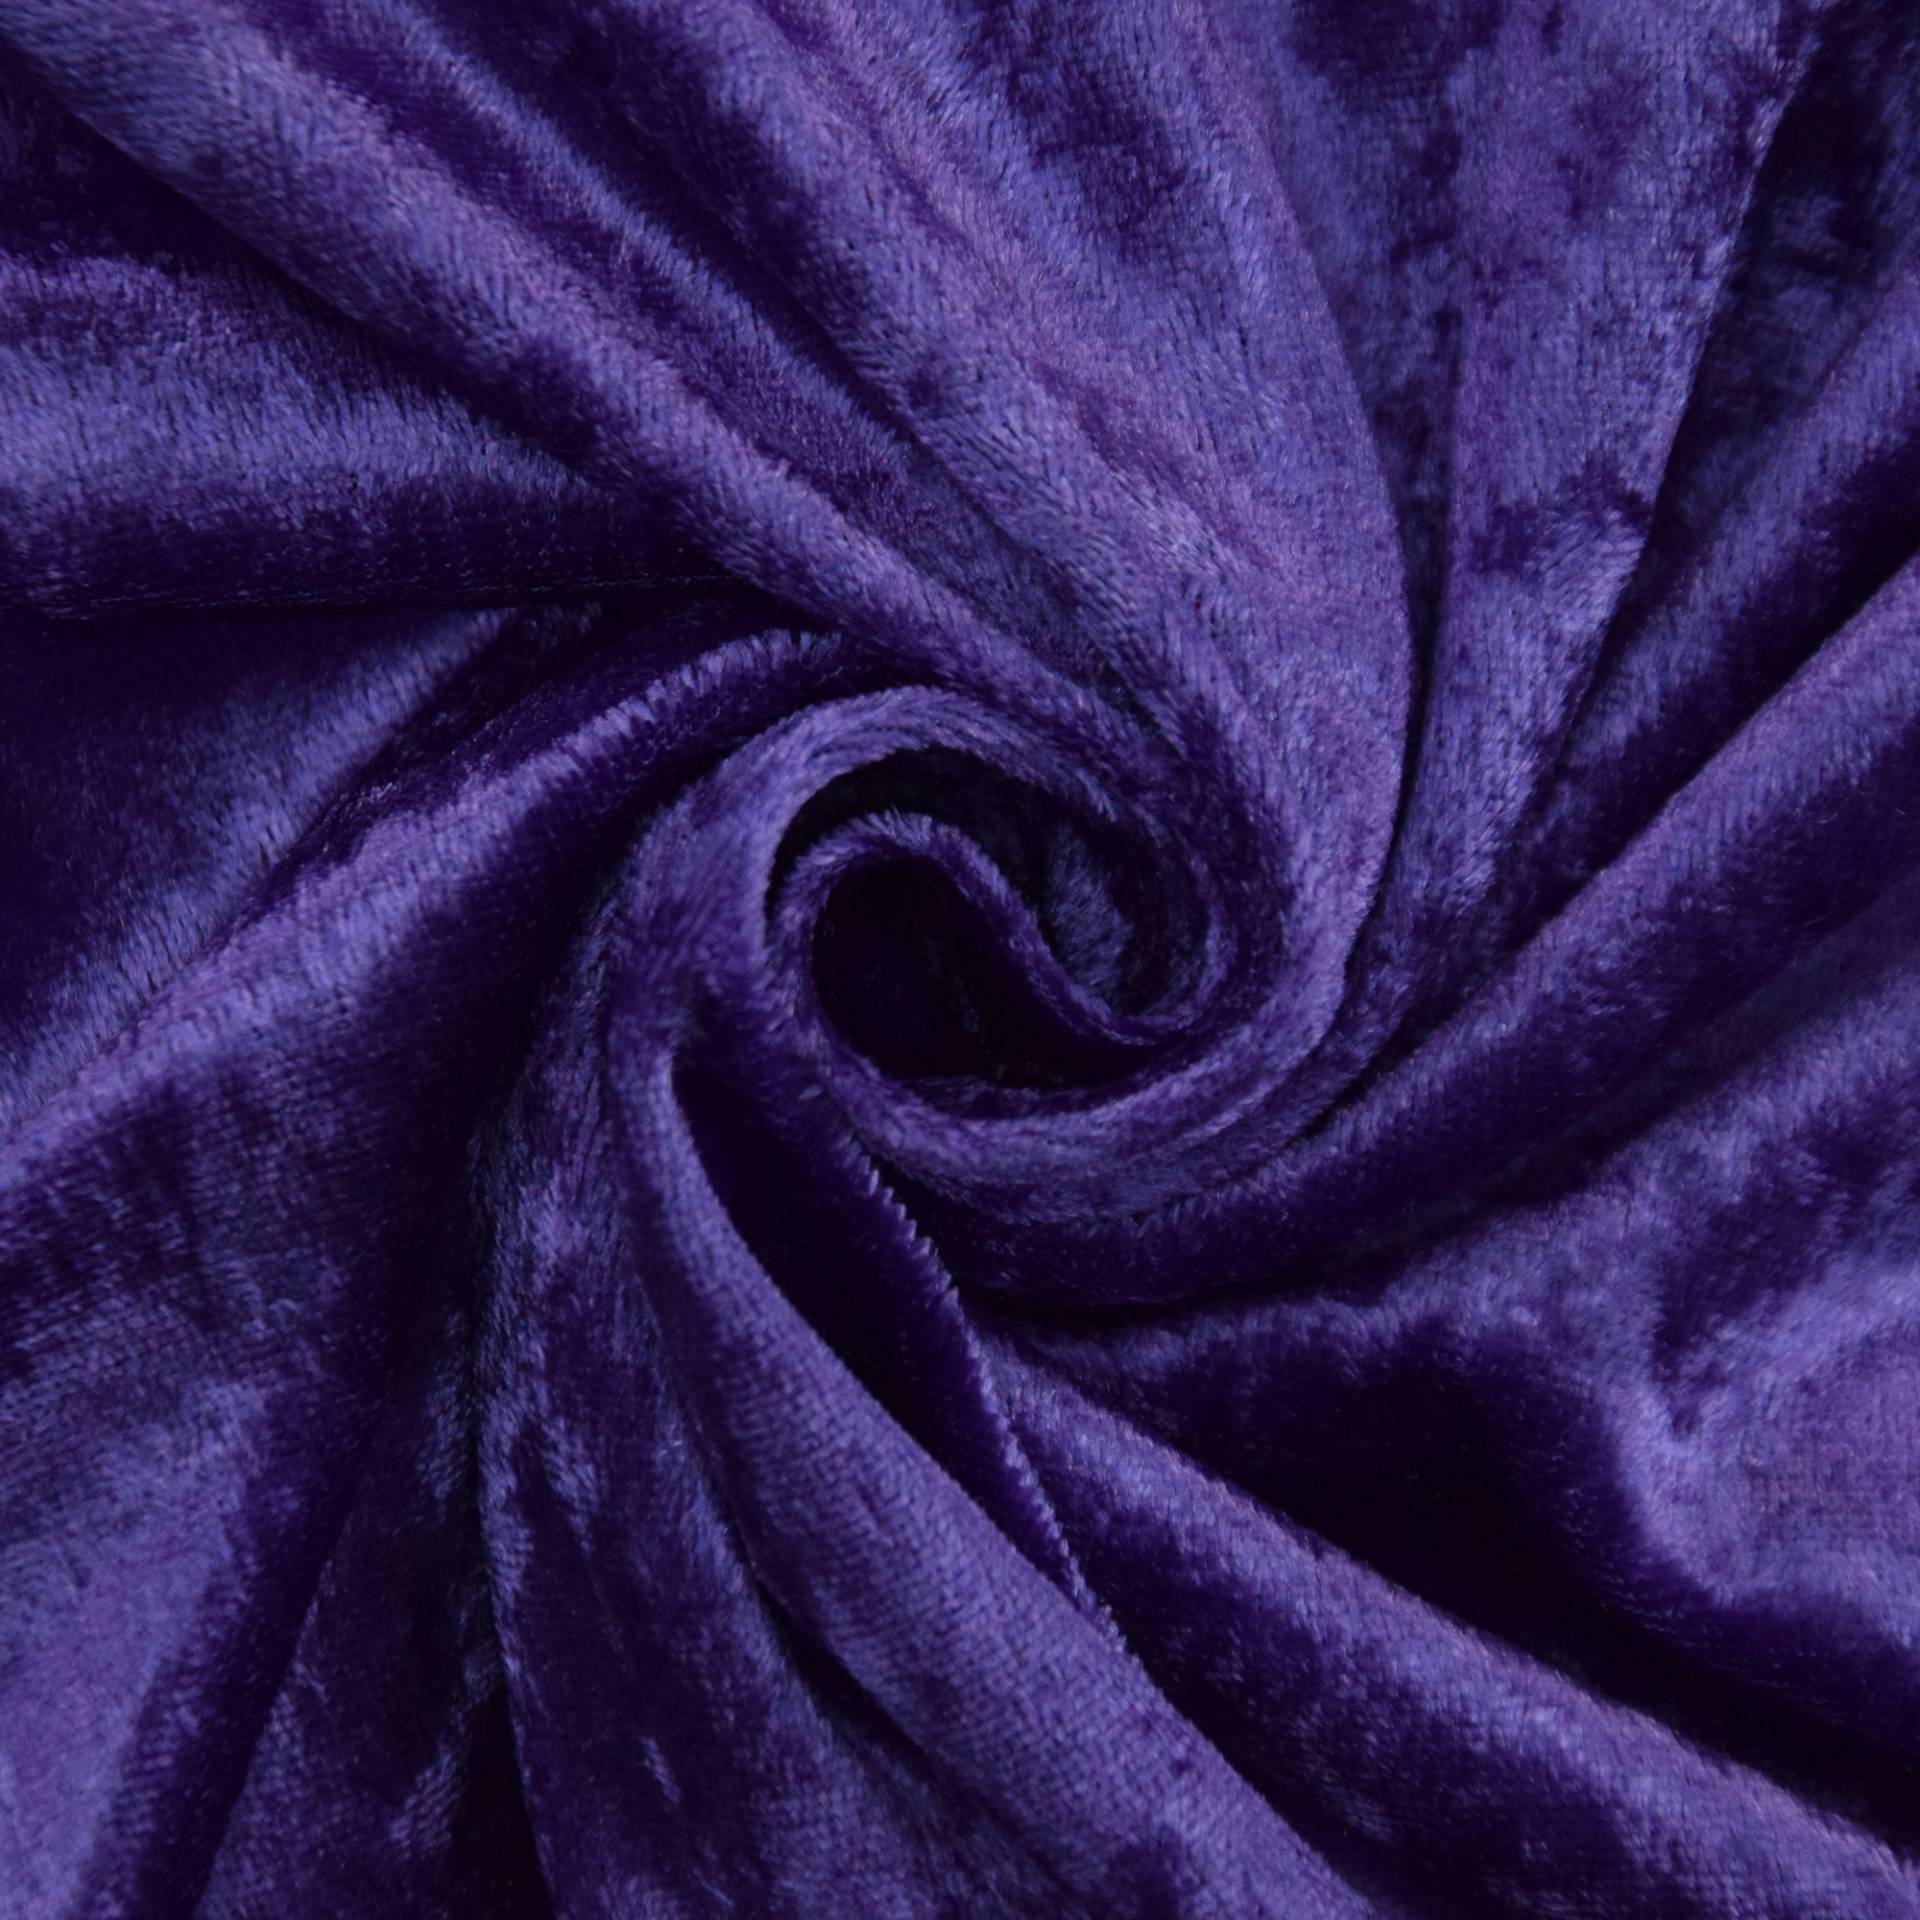 Pannesamt violett von Stoffe Hemmers